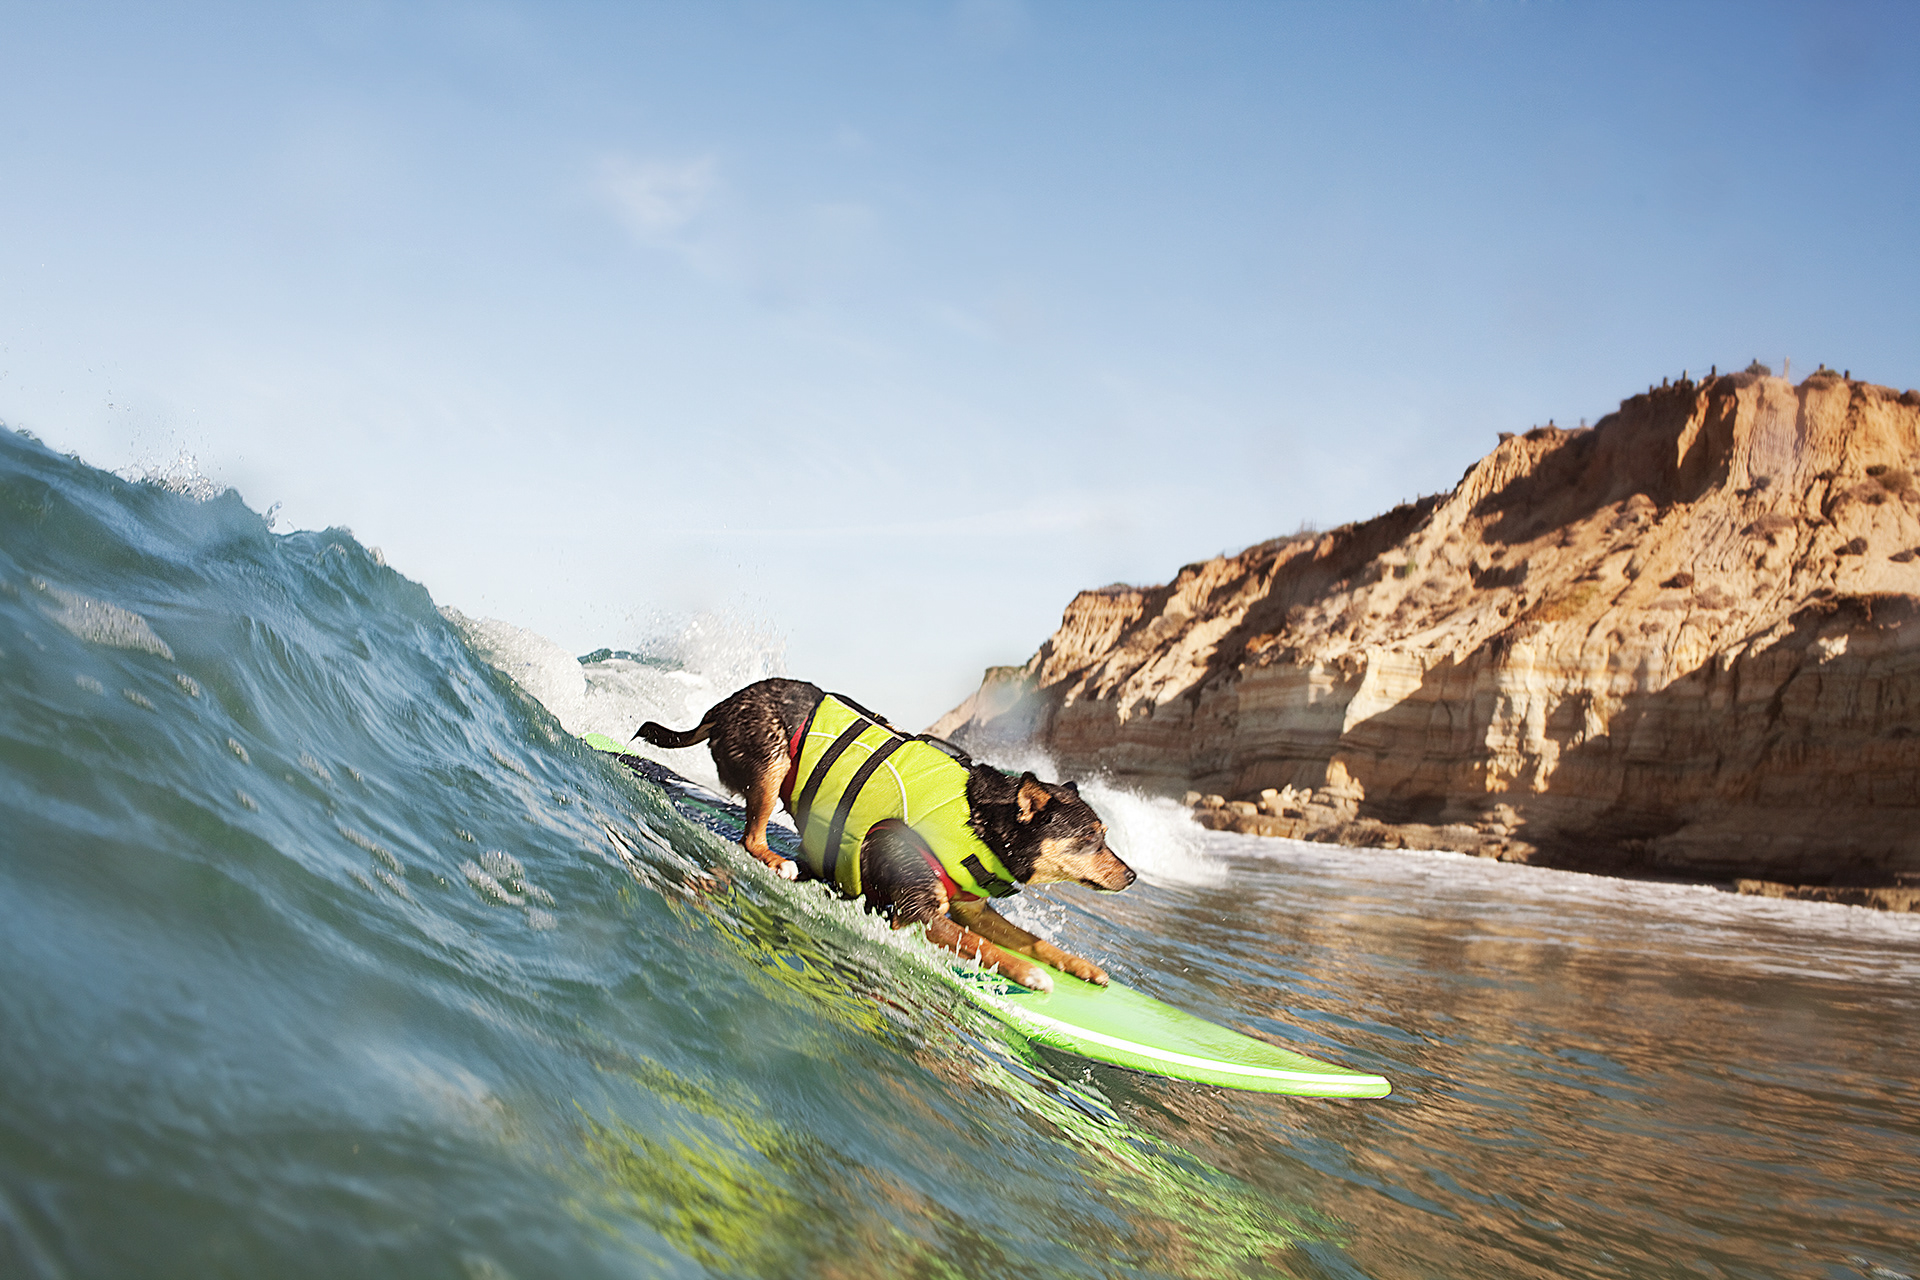 Abbey - Longest Wave Surfed by a Dog - San Diego, California